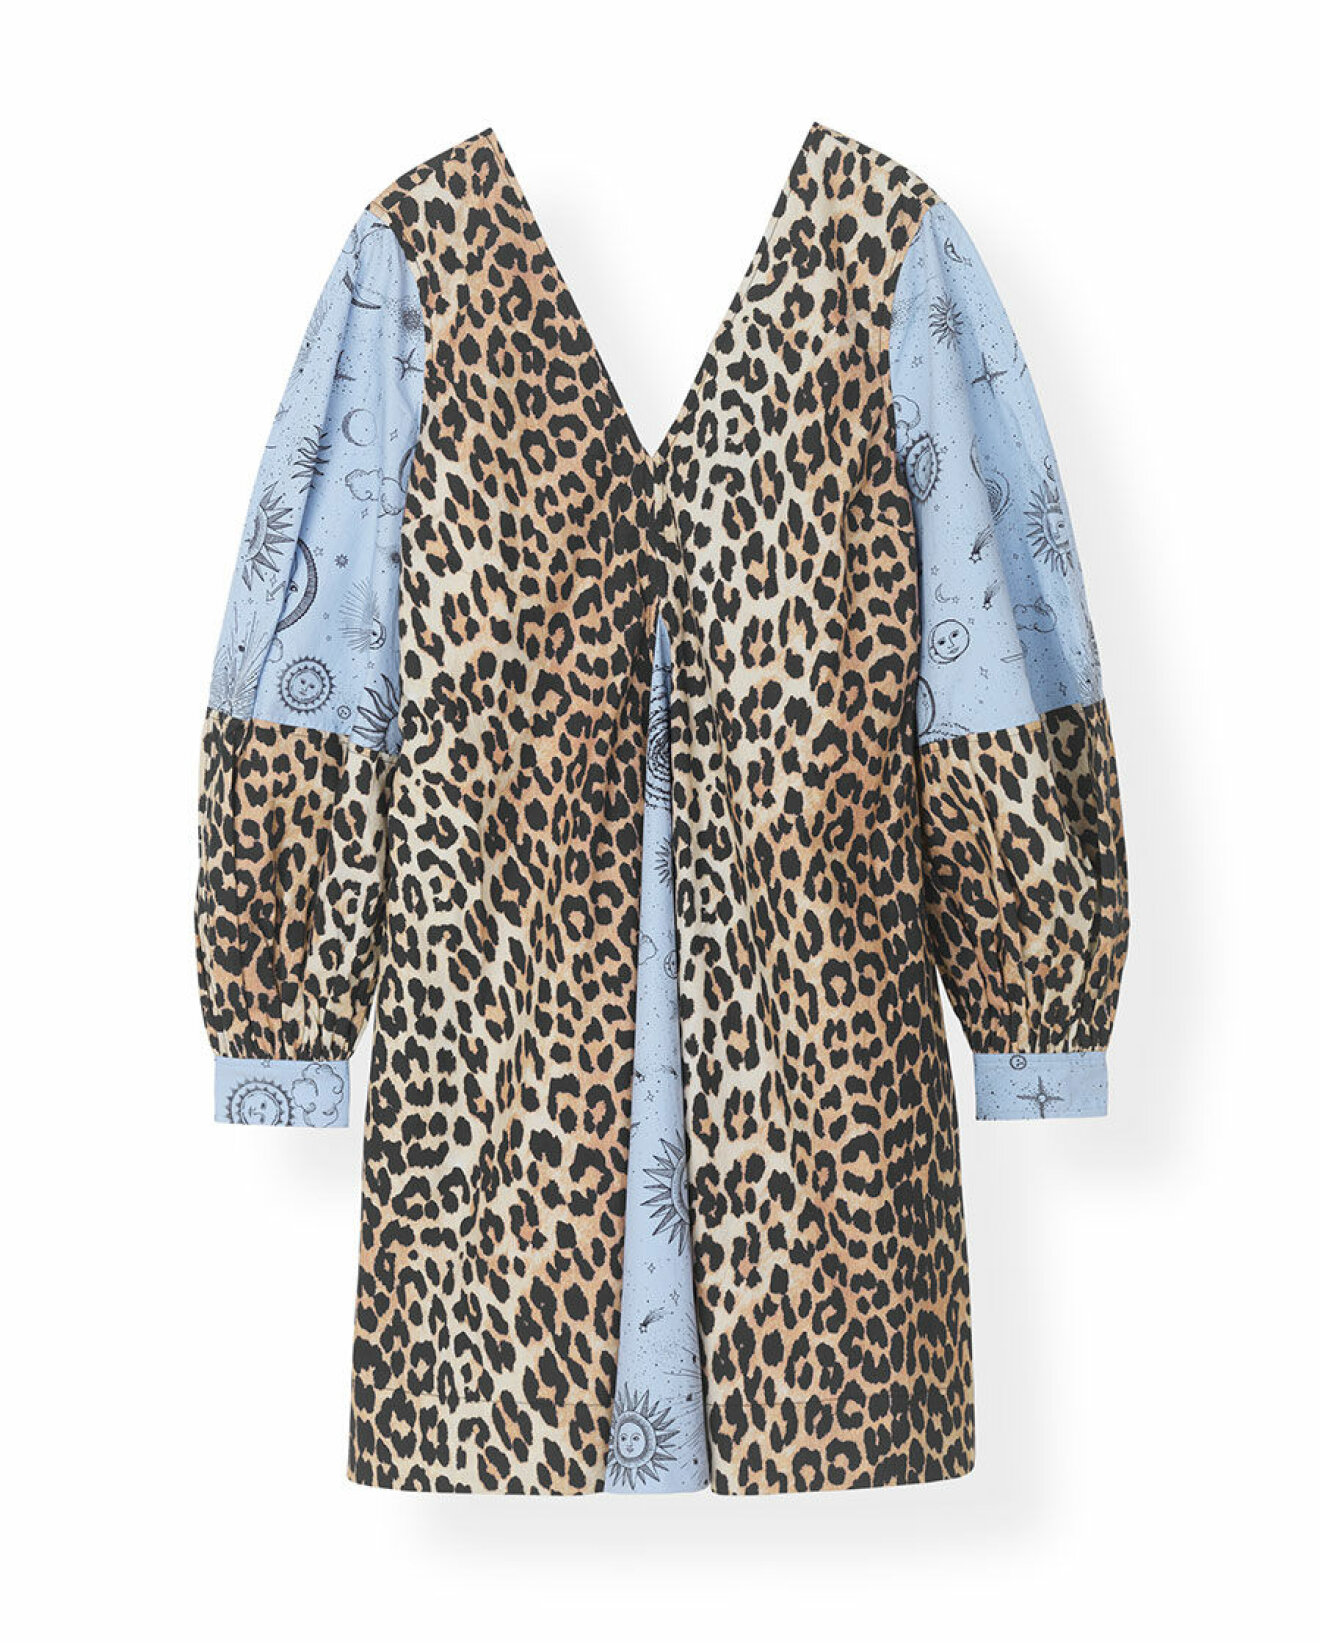 Klänning med mönstermix av leopard och ljusblått astro-mönster. Shoppa den här!